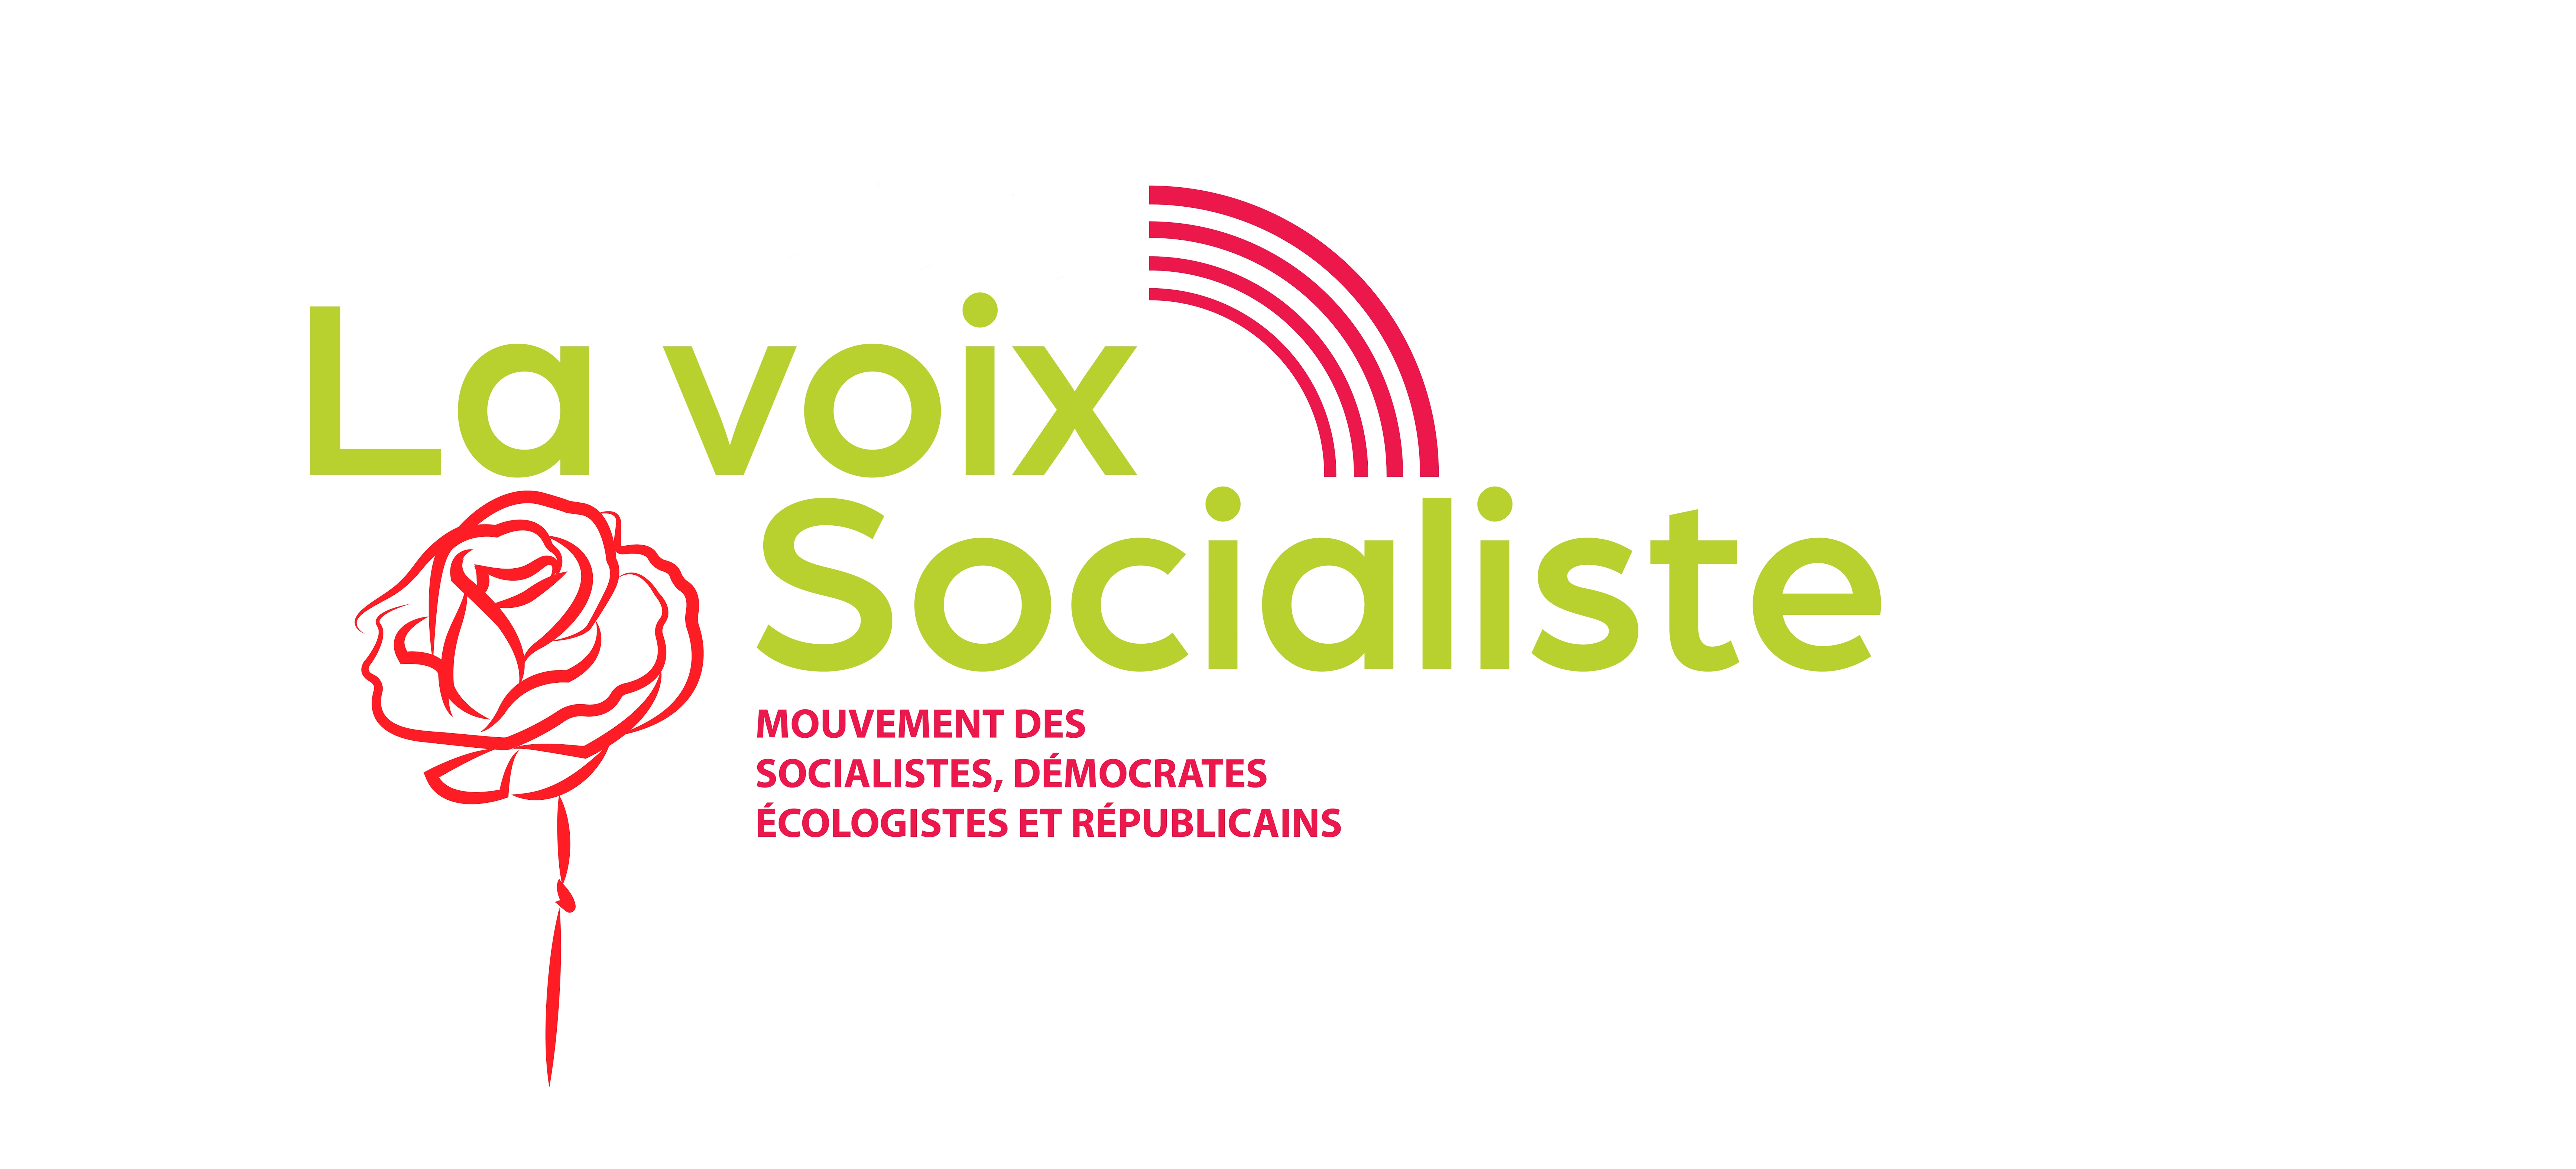 « SOCIAL-DEMOCRATIE, J’ECRIS TON NOM » de Stéphane LE FOLL – EXTRAITS